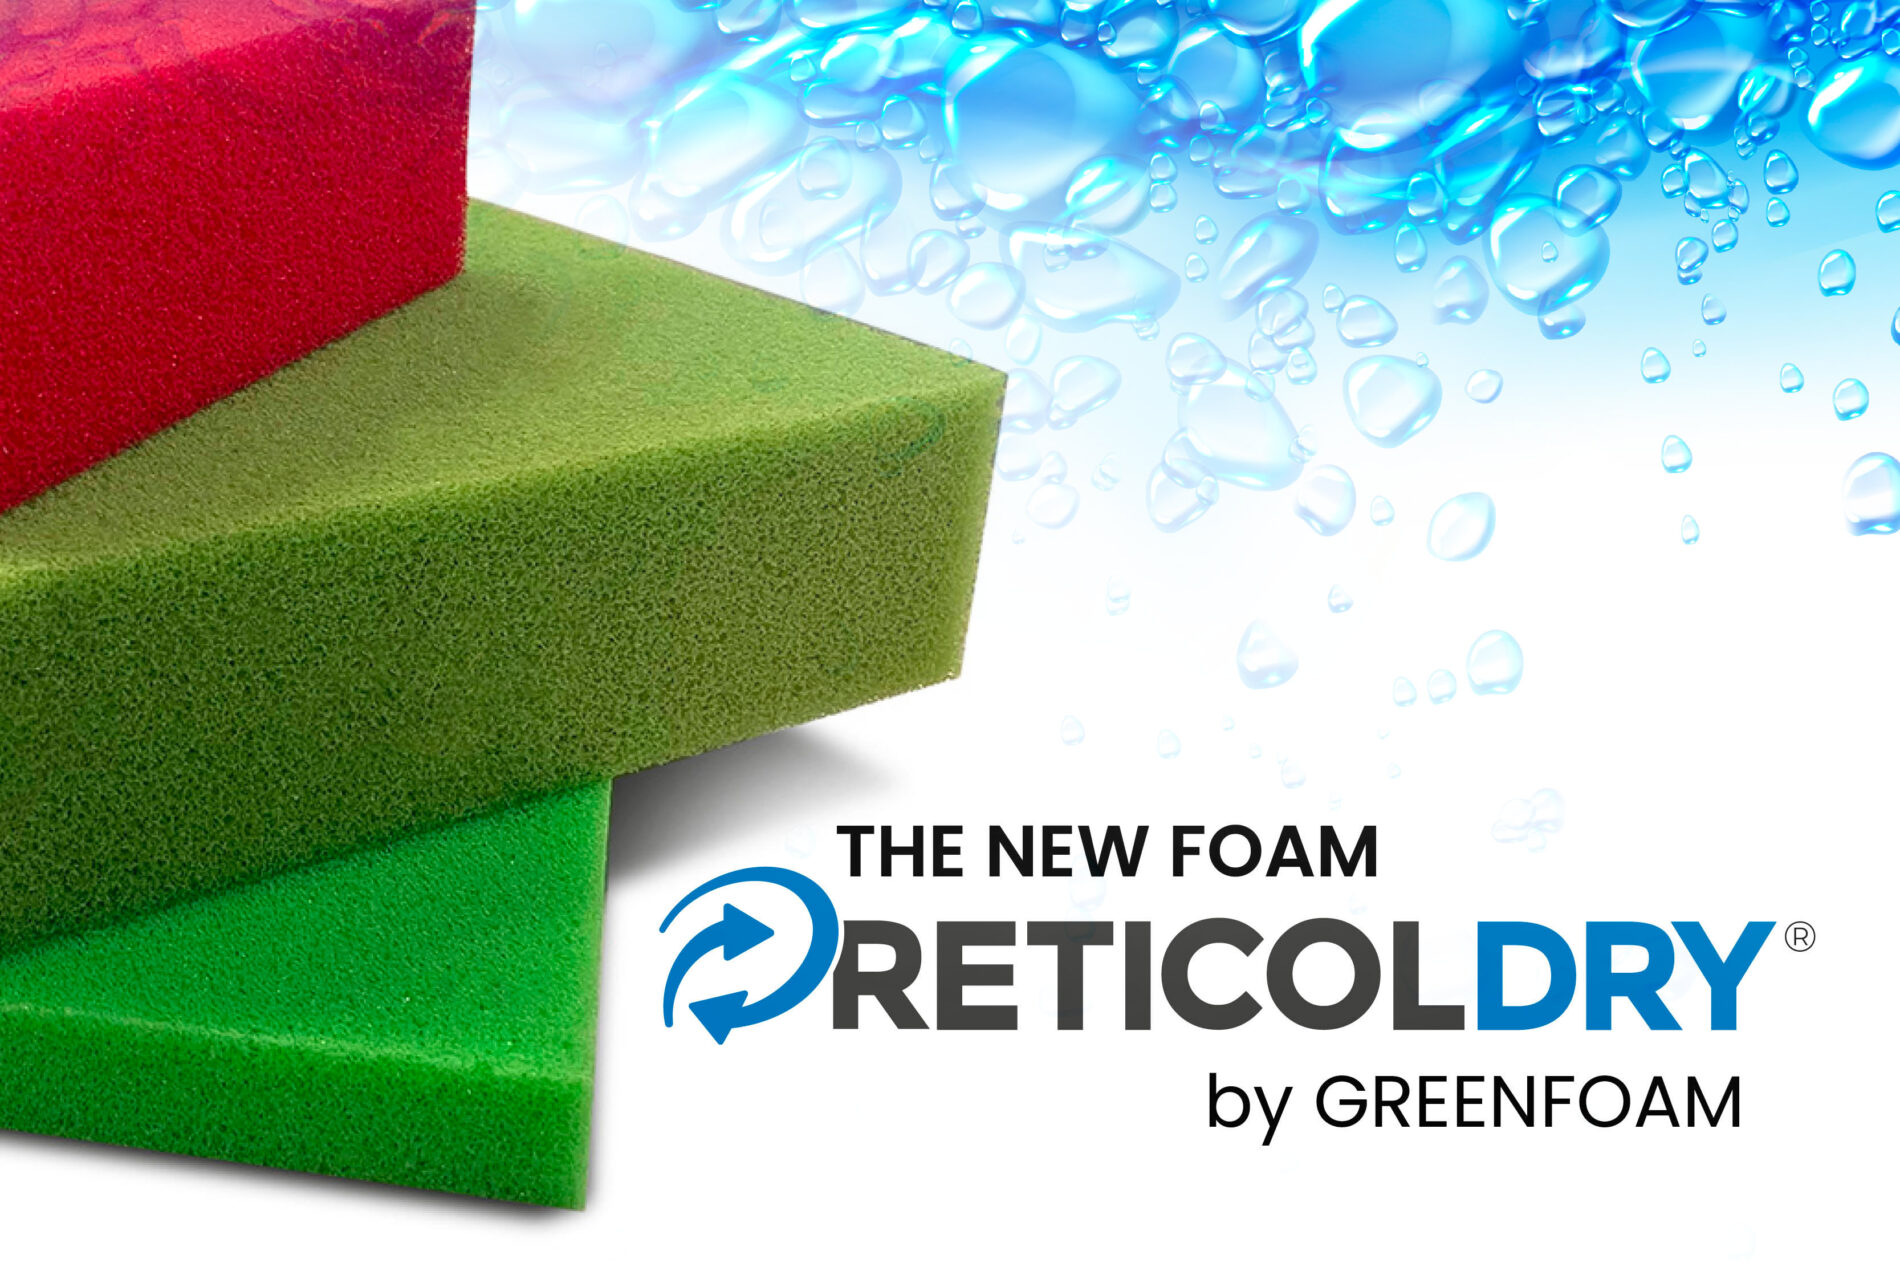 RETICOLDRY the new foam by Green Foam.